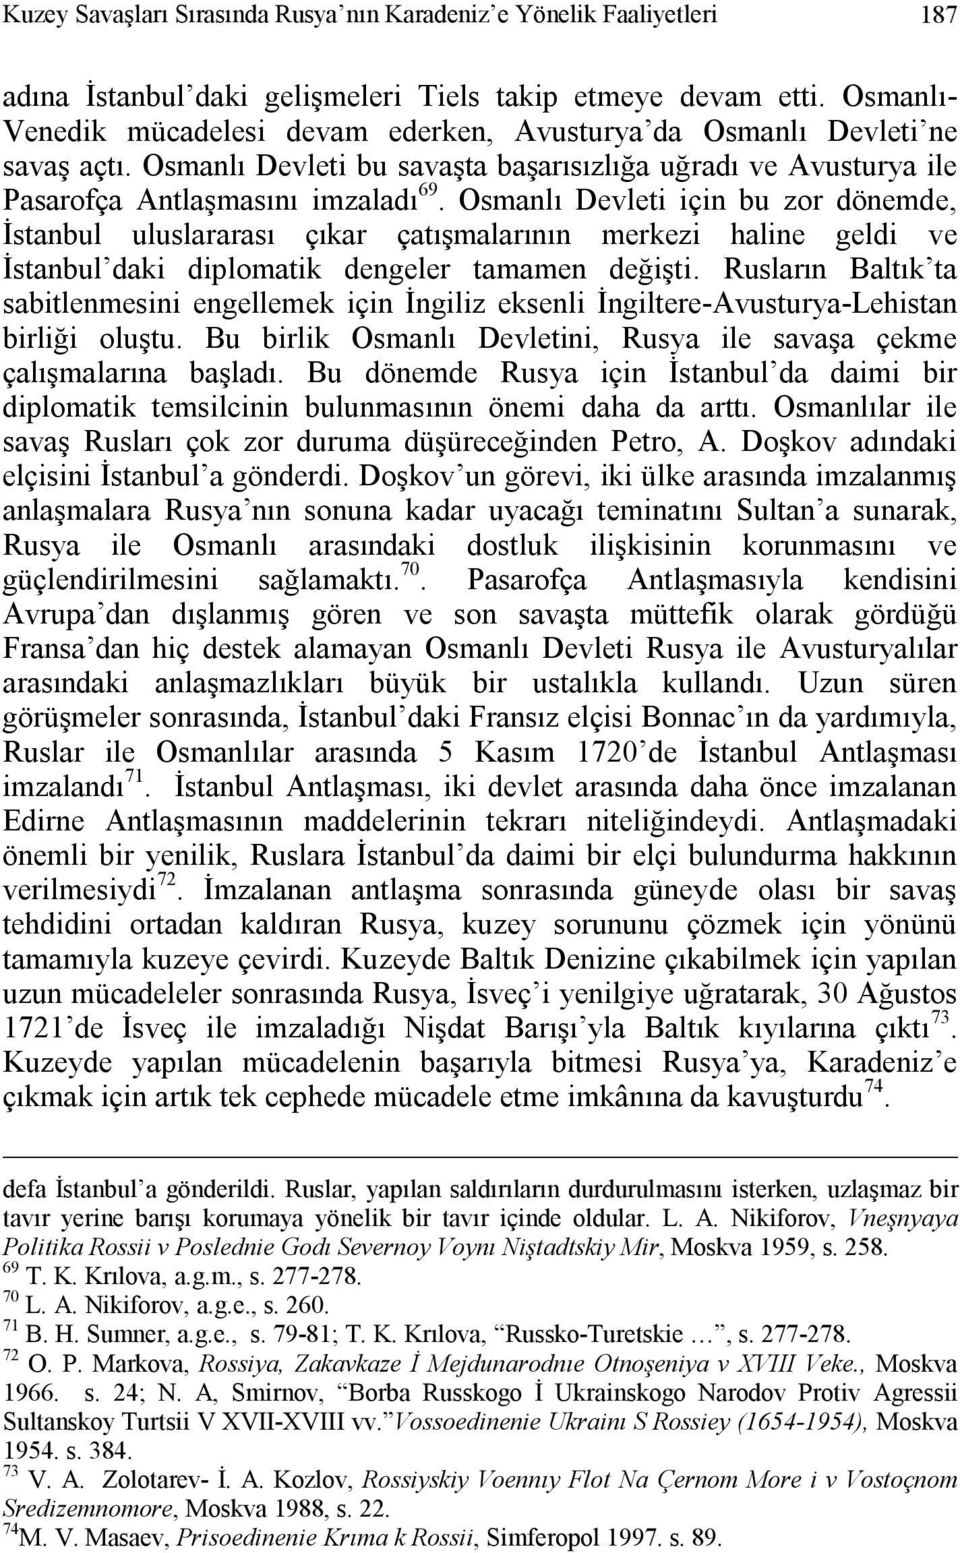 Osmanlı Devleti için bu zor dönemde, İstanbul uluslararası çıkar çatışmalarının merkezi haline geldi ve İstanbul daki diplomatik dengeler tamamen değişti.